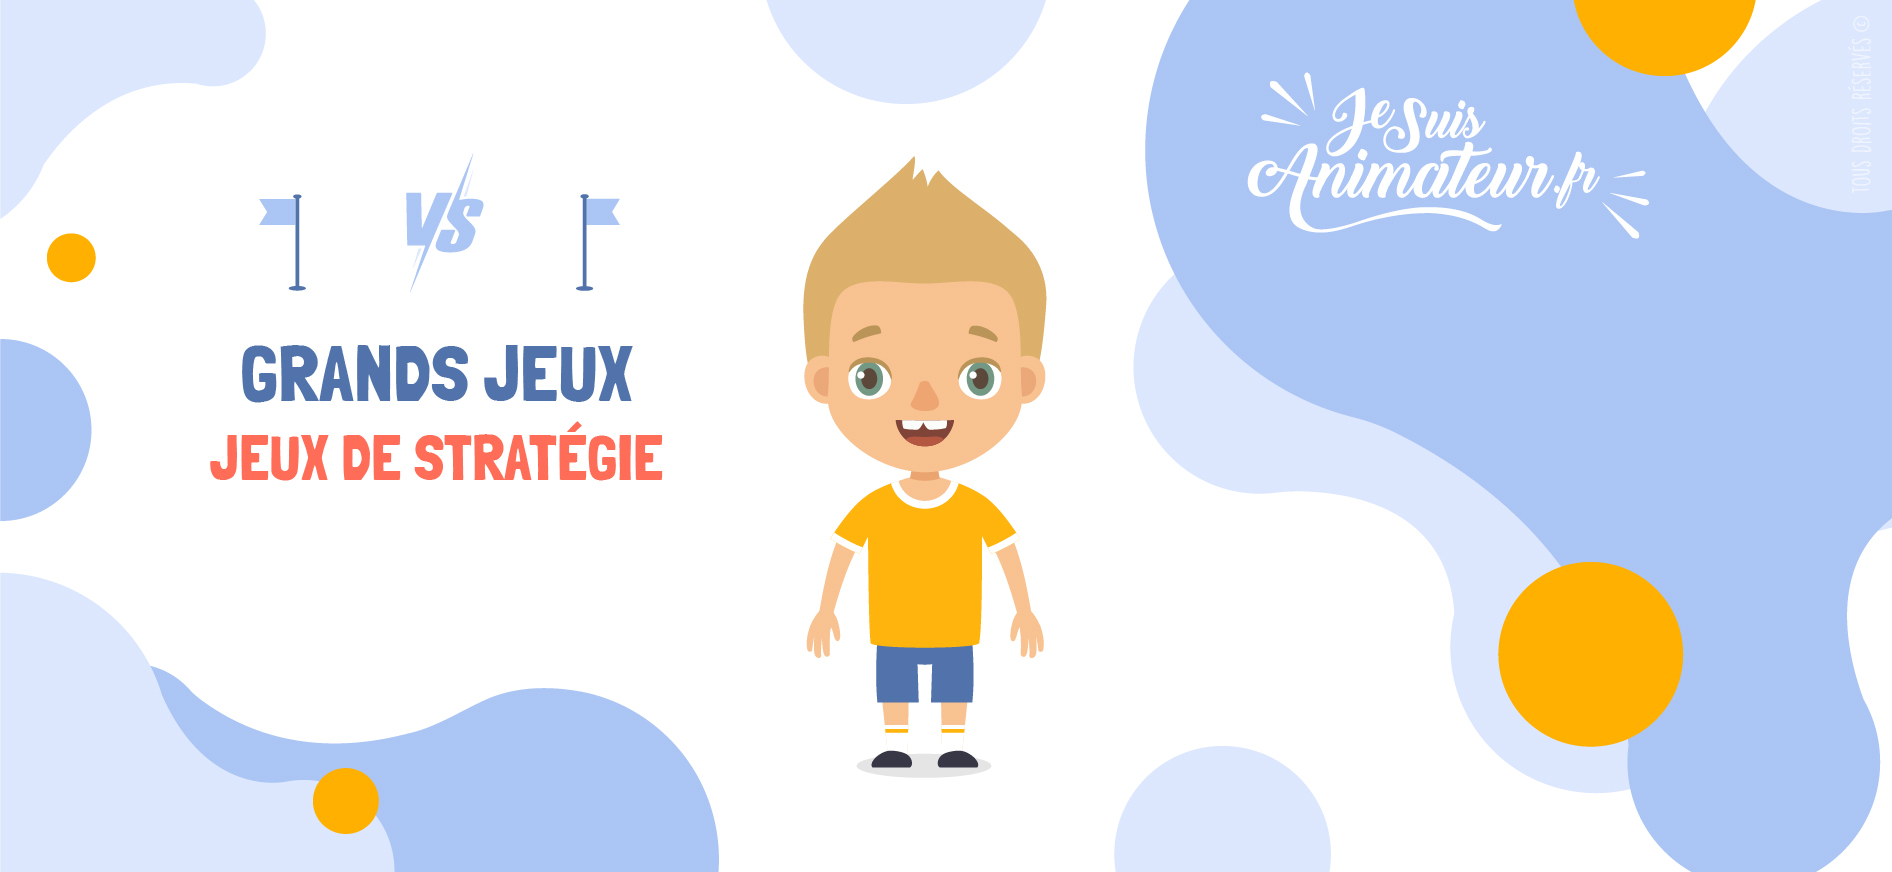 Jeux de stratégie | JeSuisAnimateur.fr